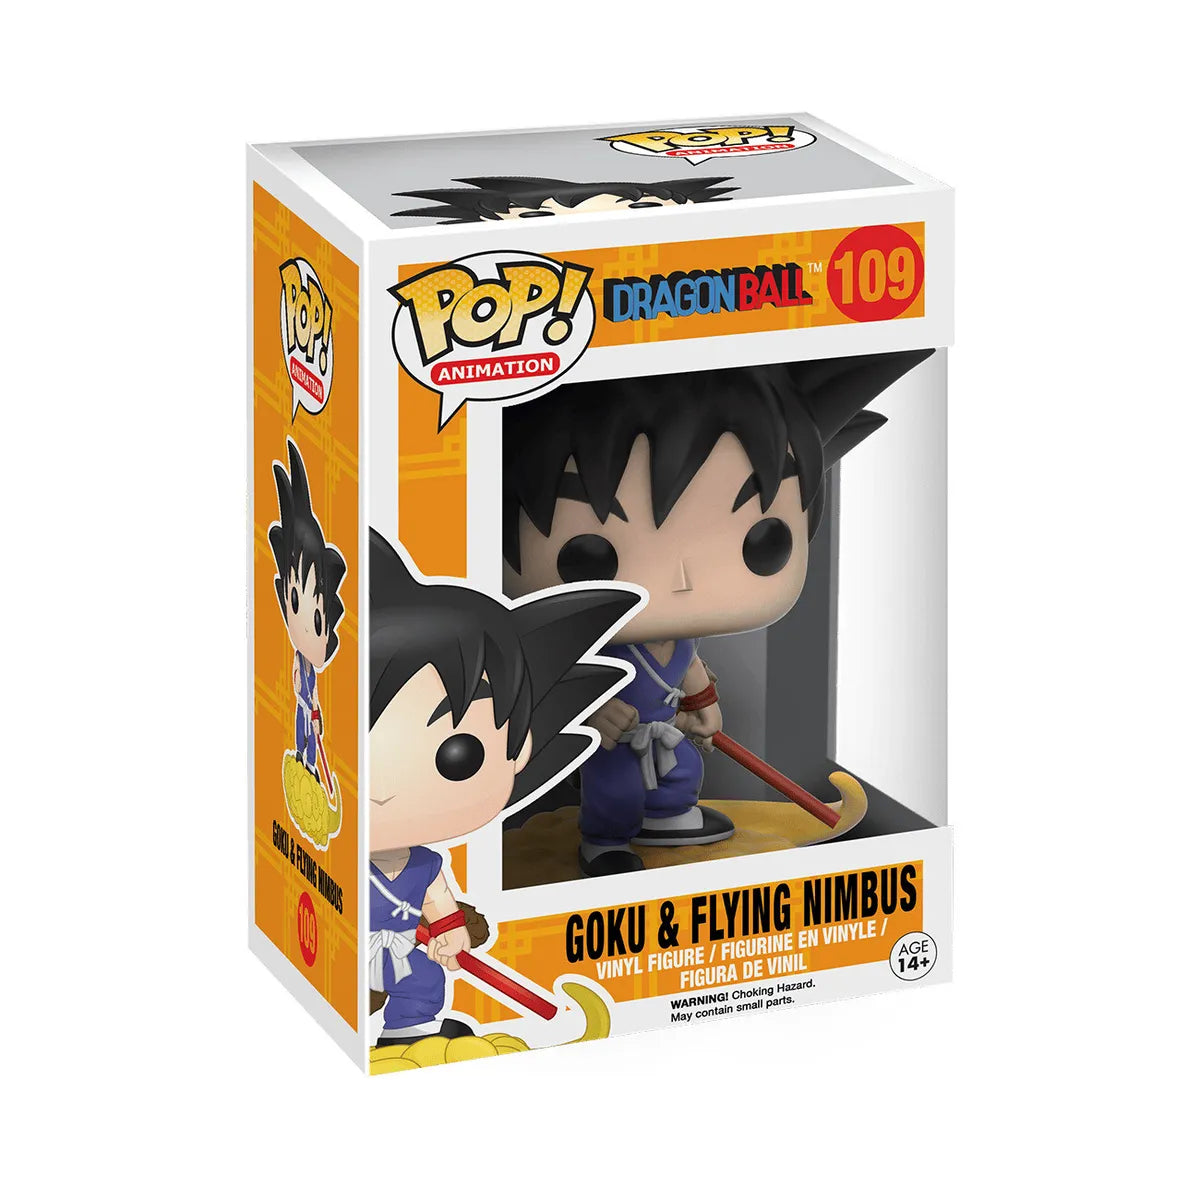 Dragon Ball Z - Goku & Flying Nimbus - Funko Pop! Animation (109)